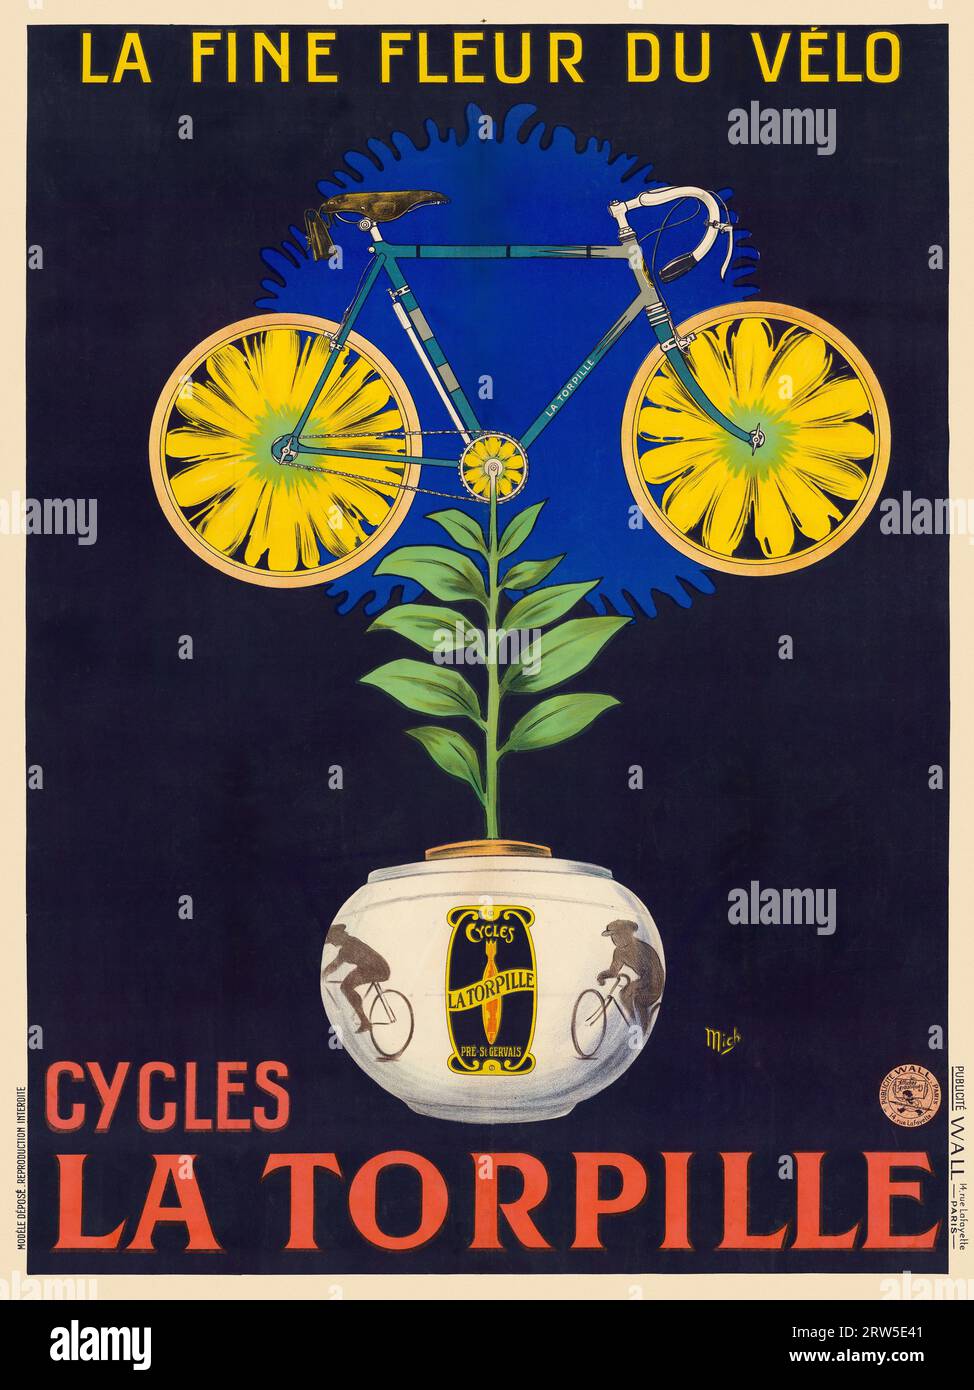 La Fine fleur du vélo. Cycles La Torpille von Jean Marie Michel Liebeaux Mich (1881-1923). Poster, das 1923 in Frankreich veröffentlicht wurde. Stockfoto